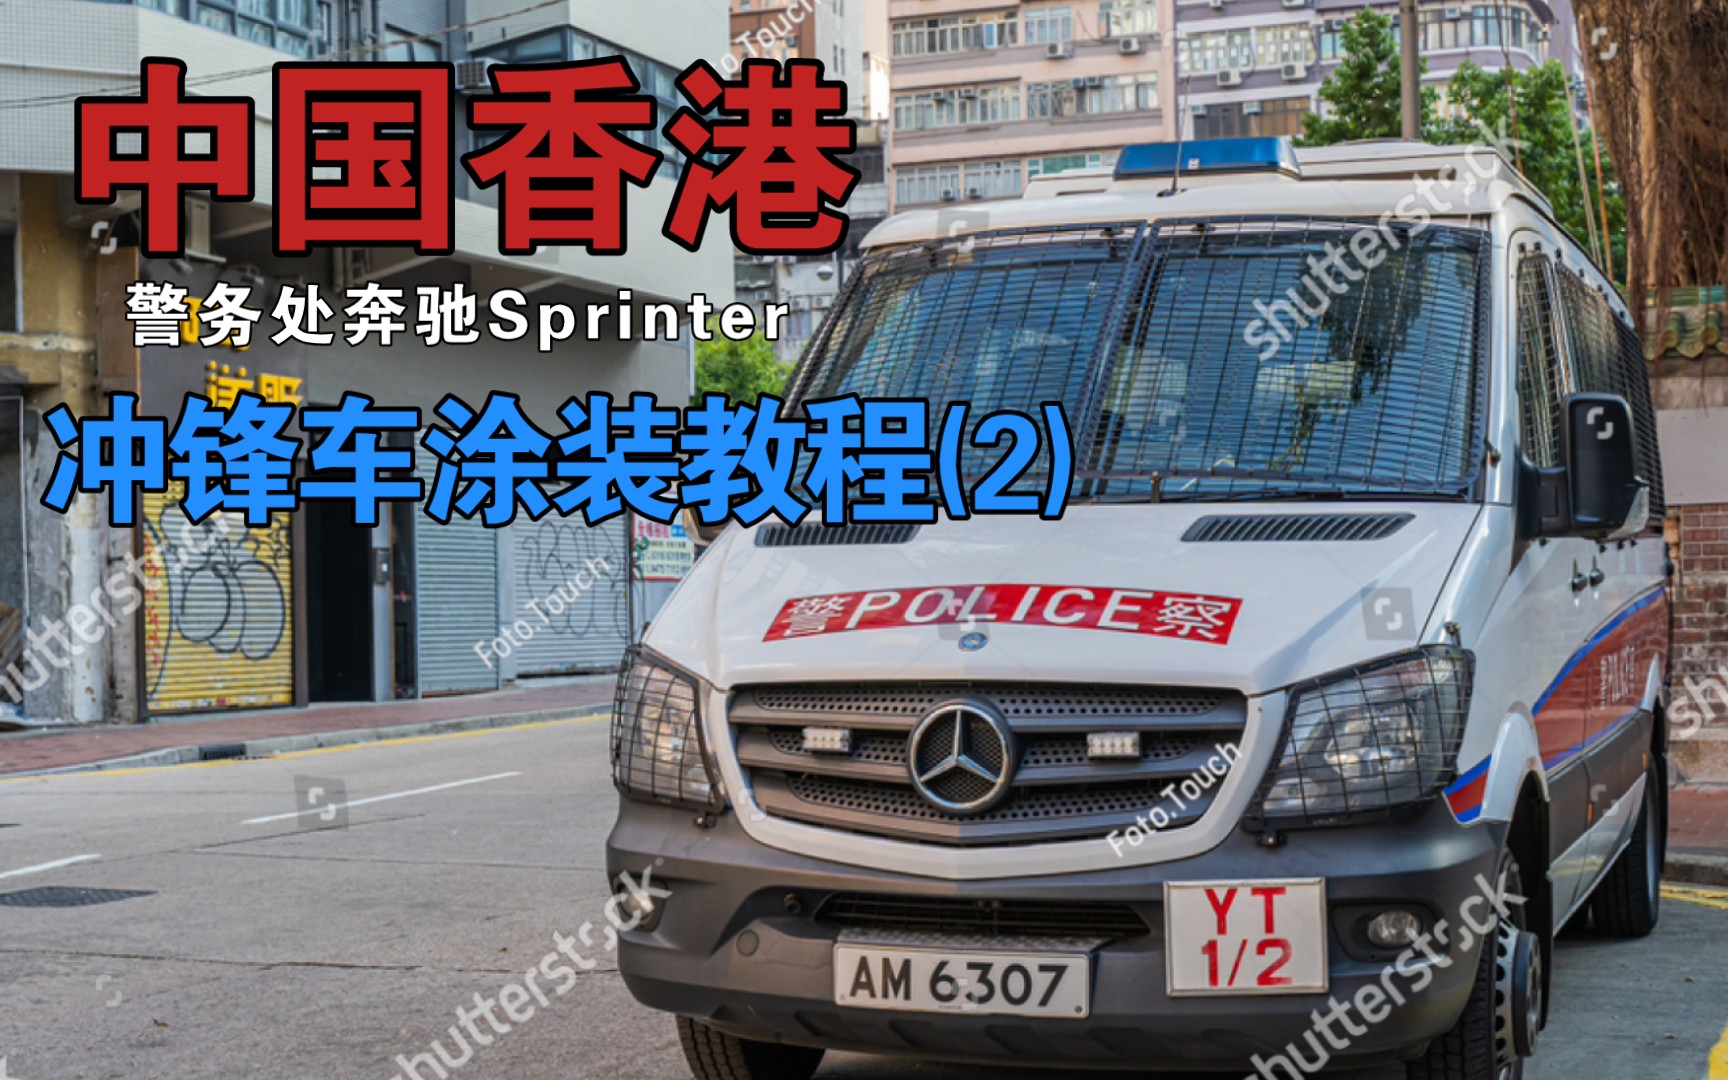 [cpm] 中国香港警务处奔驰srinter冲锋车涂装教程 (2)